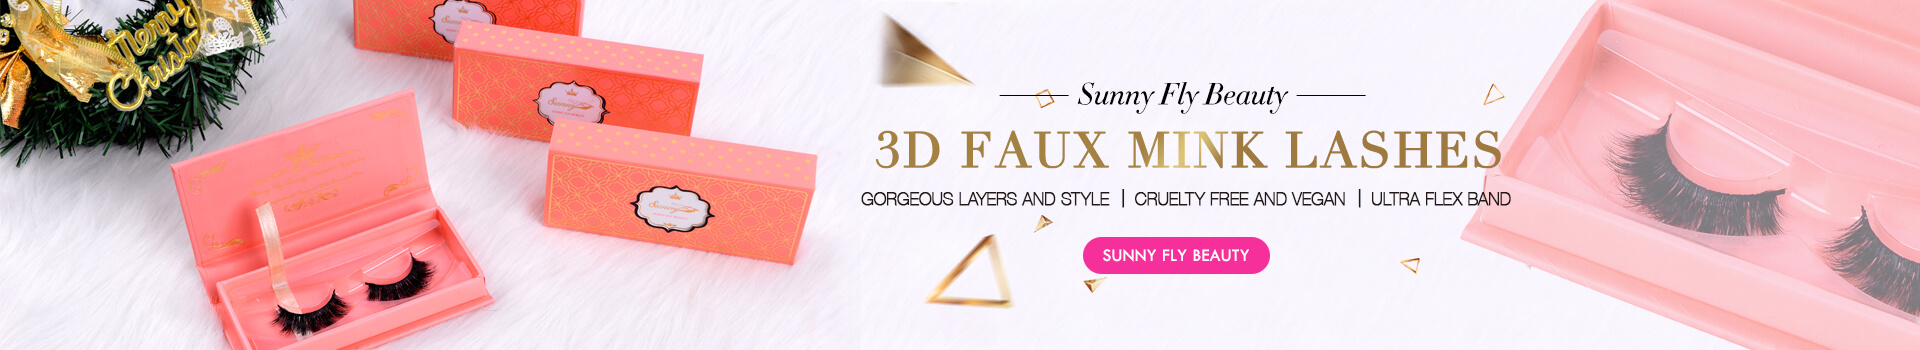 3D Faux Mink Lashes SD29